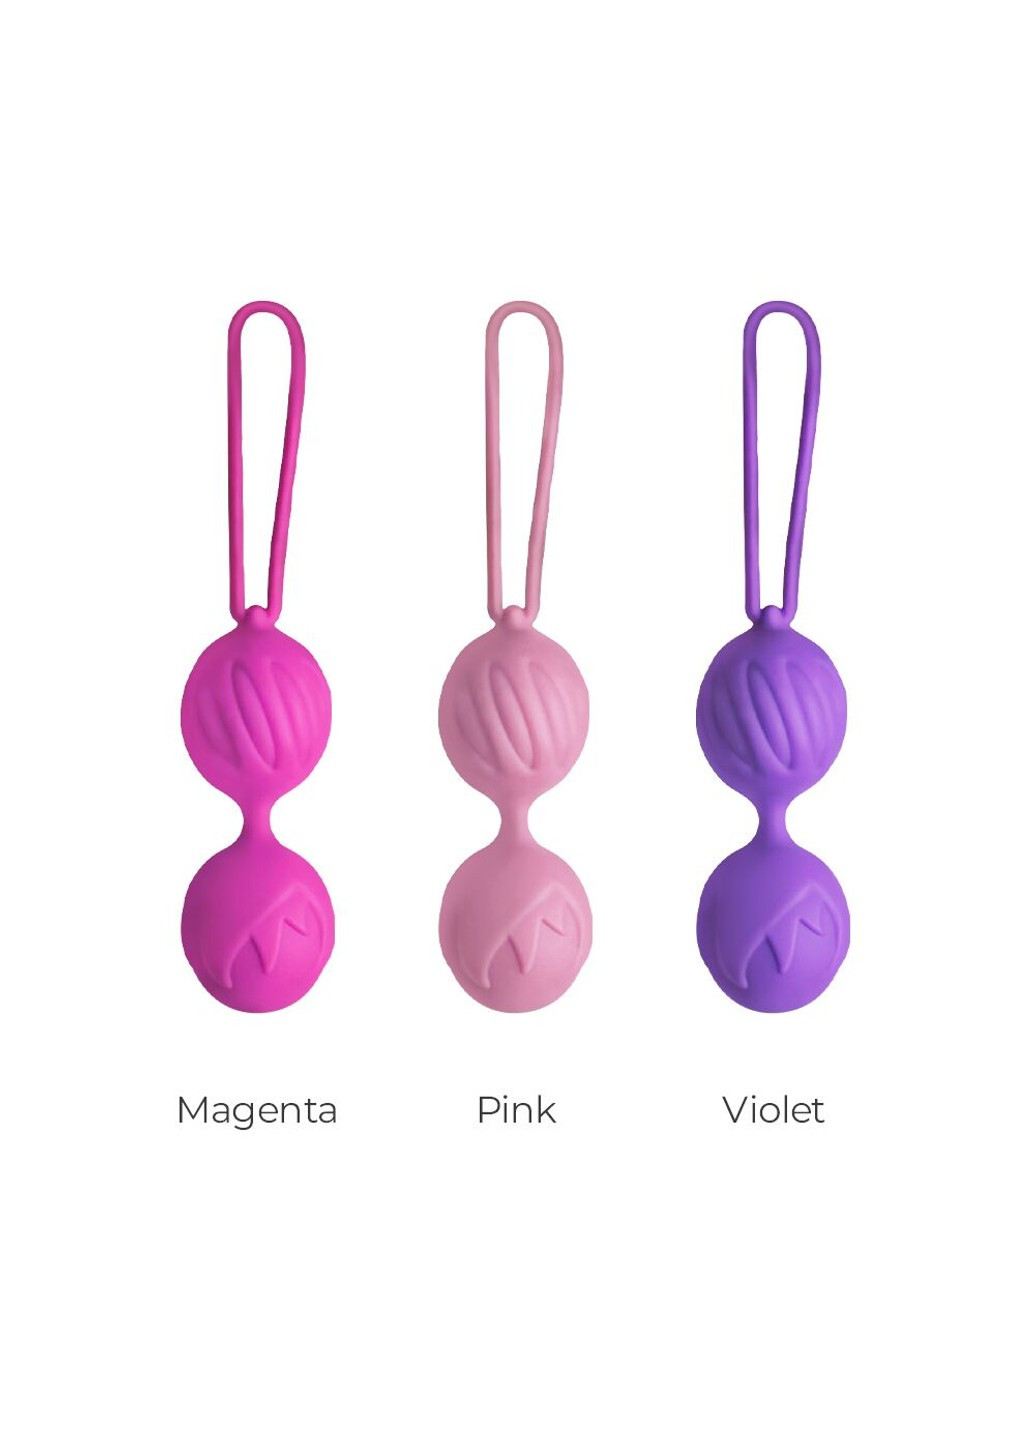 Вагинальные шарики Geisha Lastic Balls Mini Pink (S), диаметр 3,4см, вес 85гр Adrien Lastic (254885529)